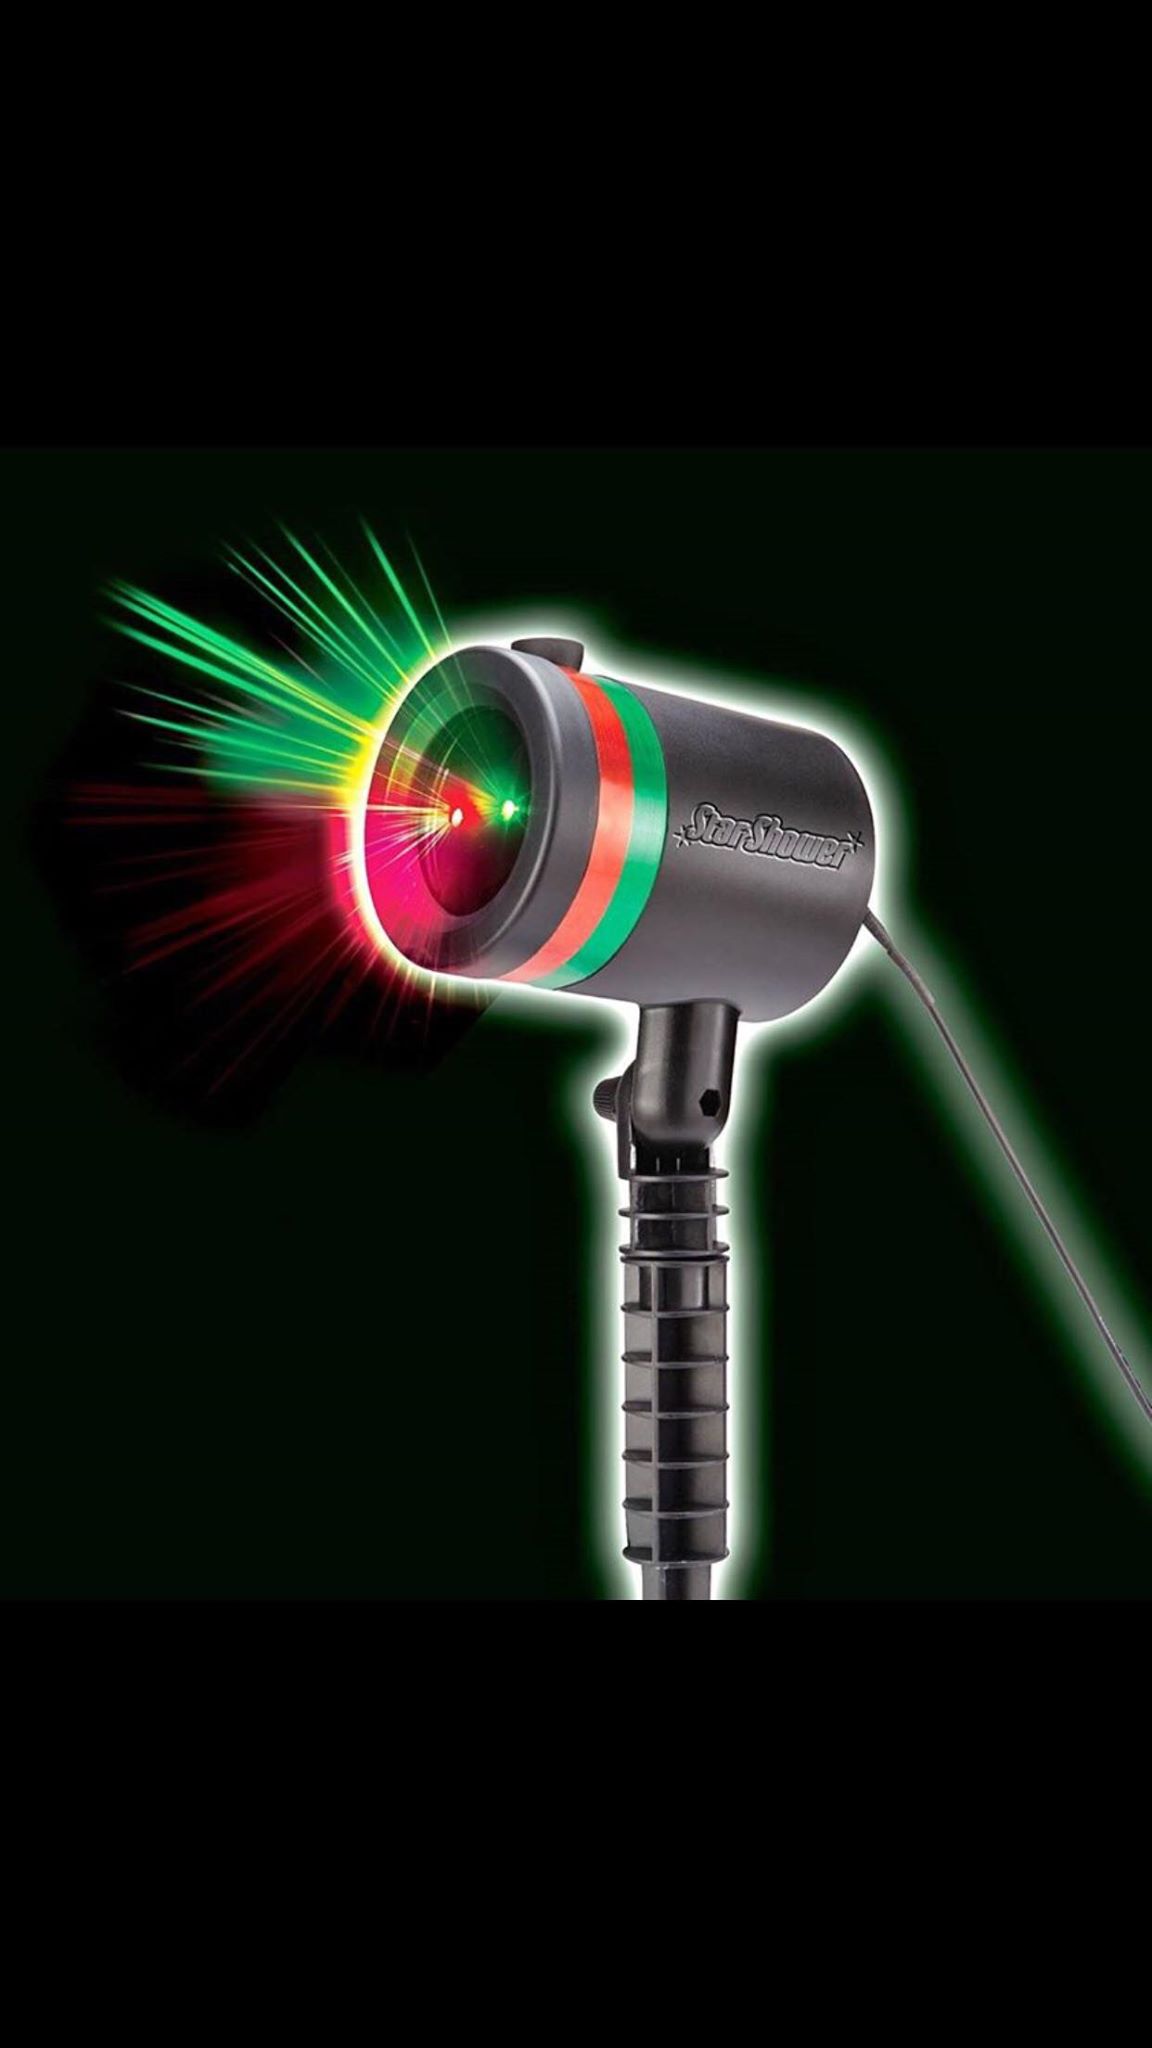 Star shower. Лазерный проектор Звездный дождь. Лазерный проектор Star Shower Laser. Лазерный Звездный проектор Outdoor Laser Light. Фонарь Звездный дождь.